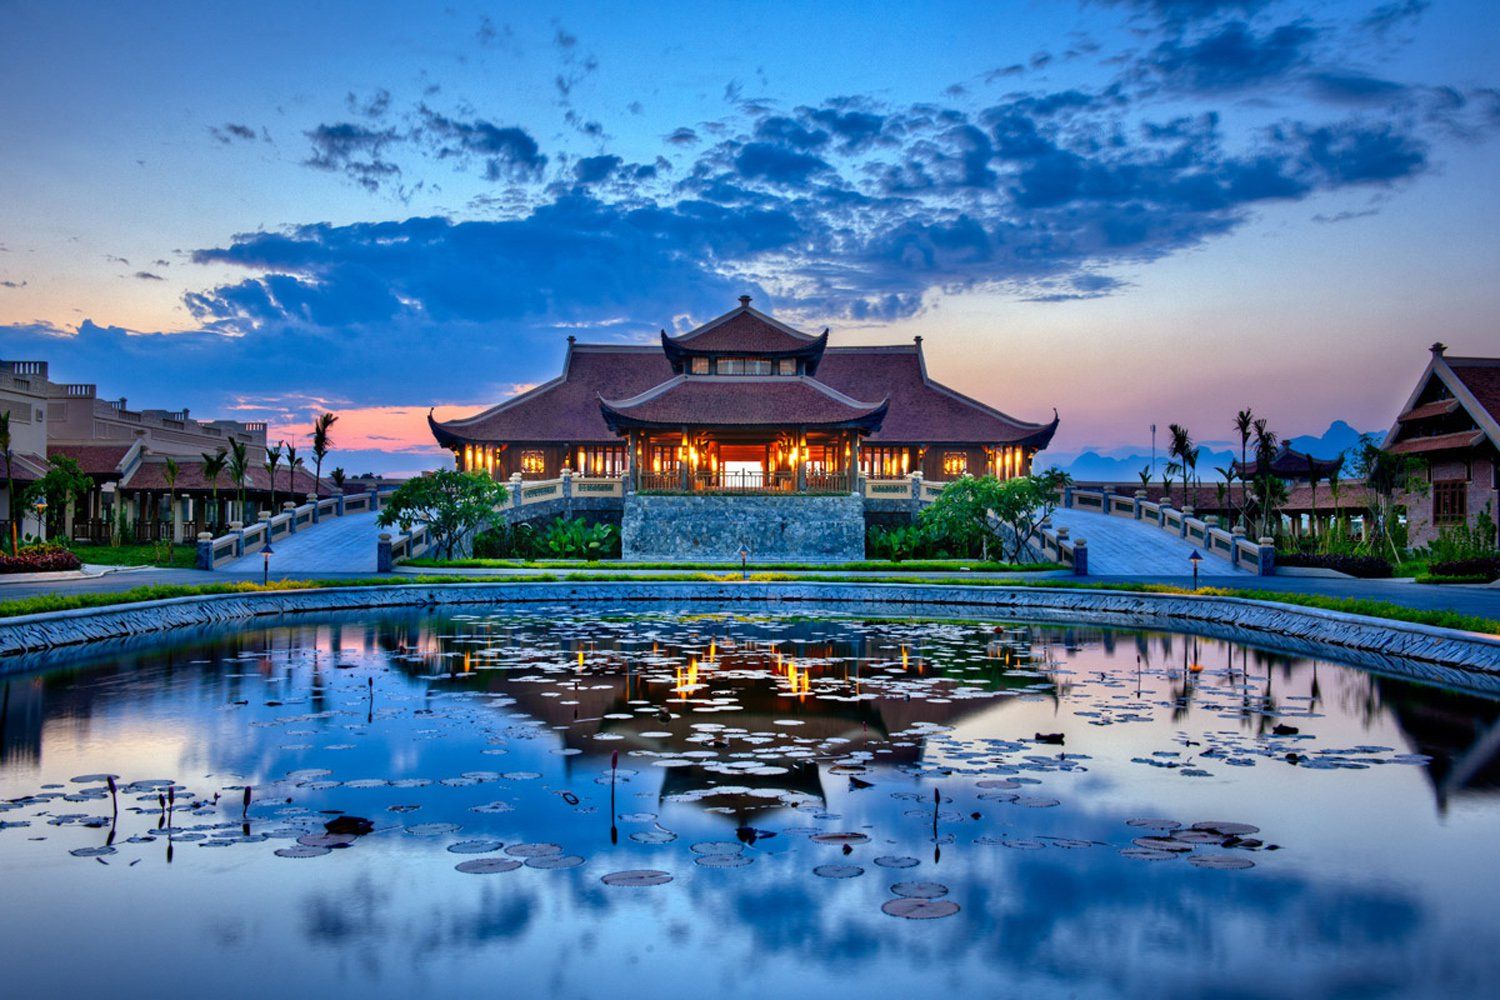 Resort gần Hà Nội - Top 12 khu nghỉ dưỡng tốt nhất 2022 | Justfly.vn